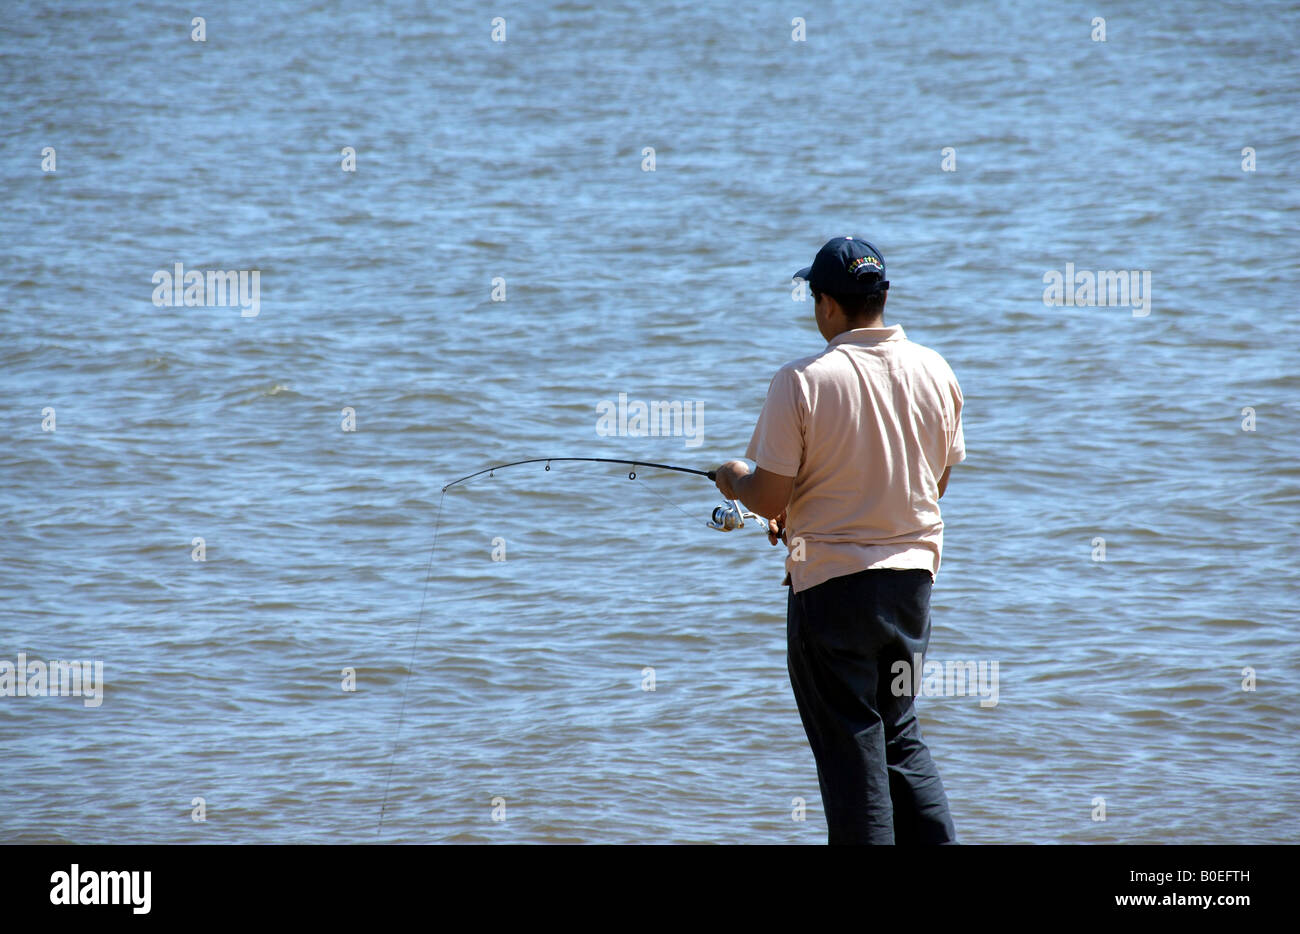 Hispanic man fishing in the Chesapeake Bay Stock Photo